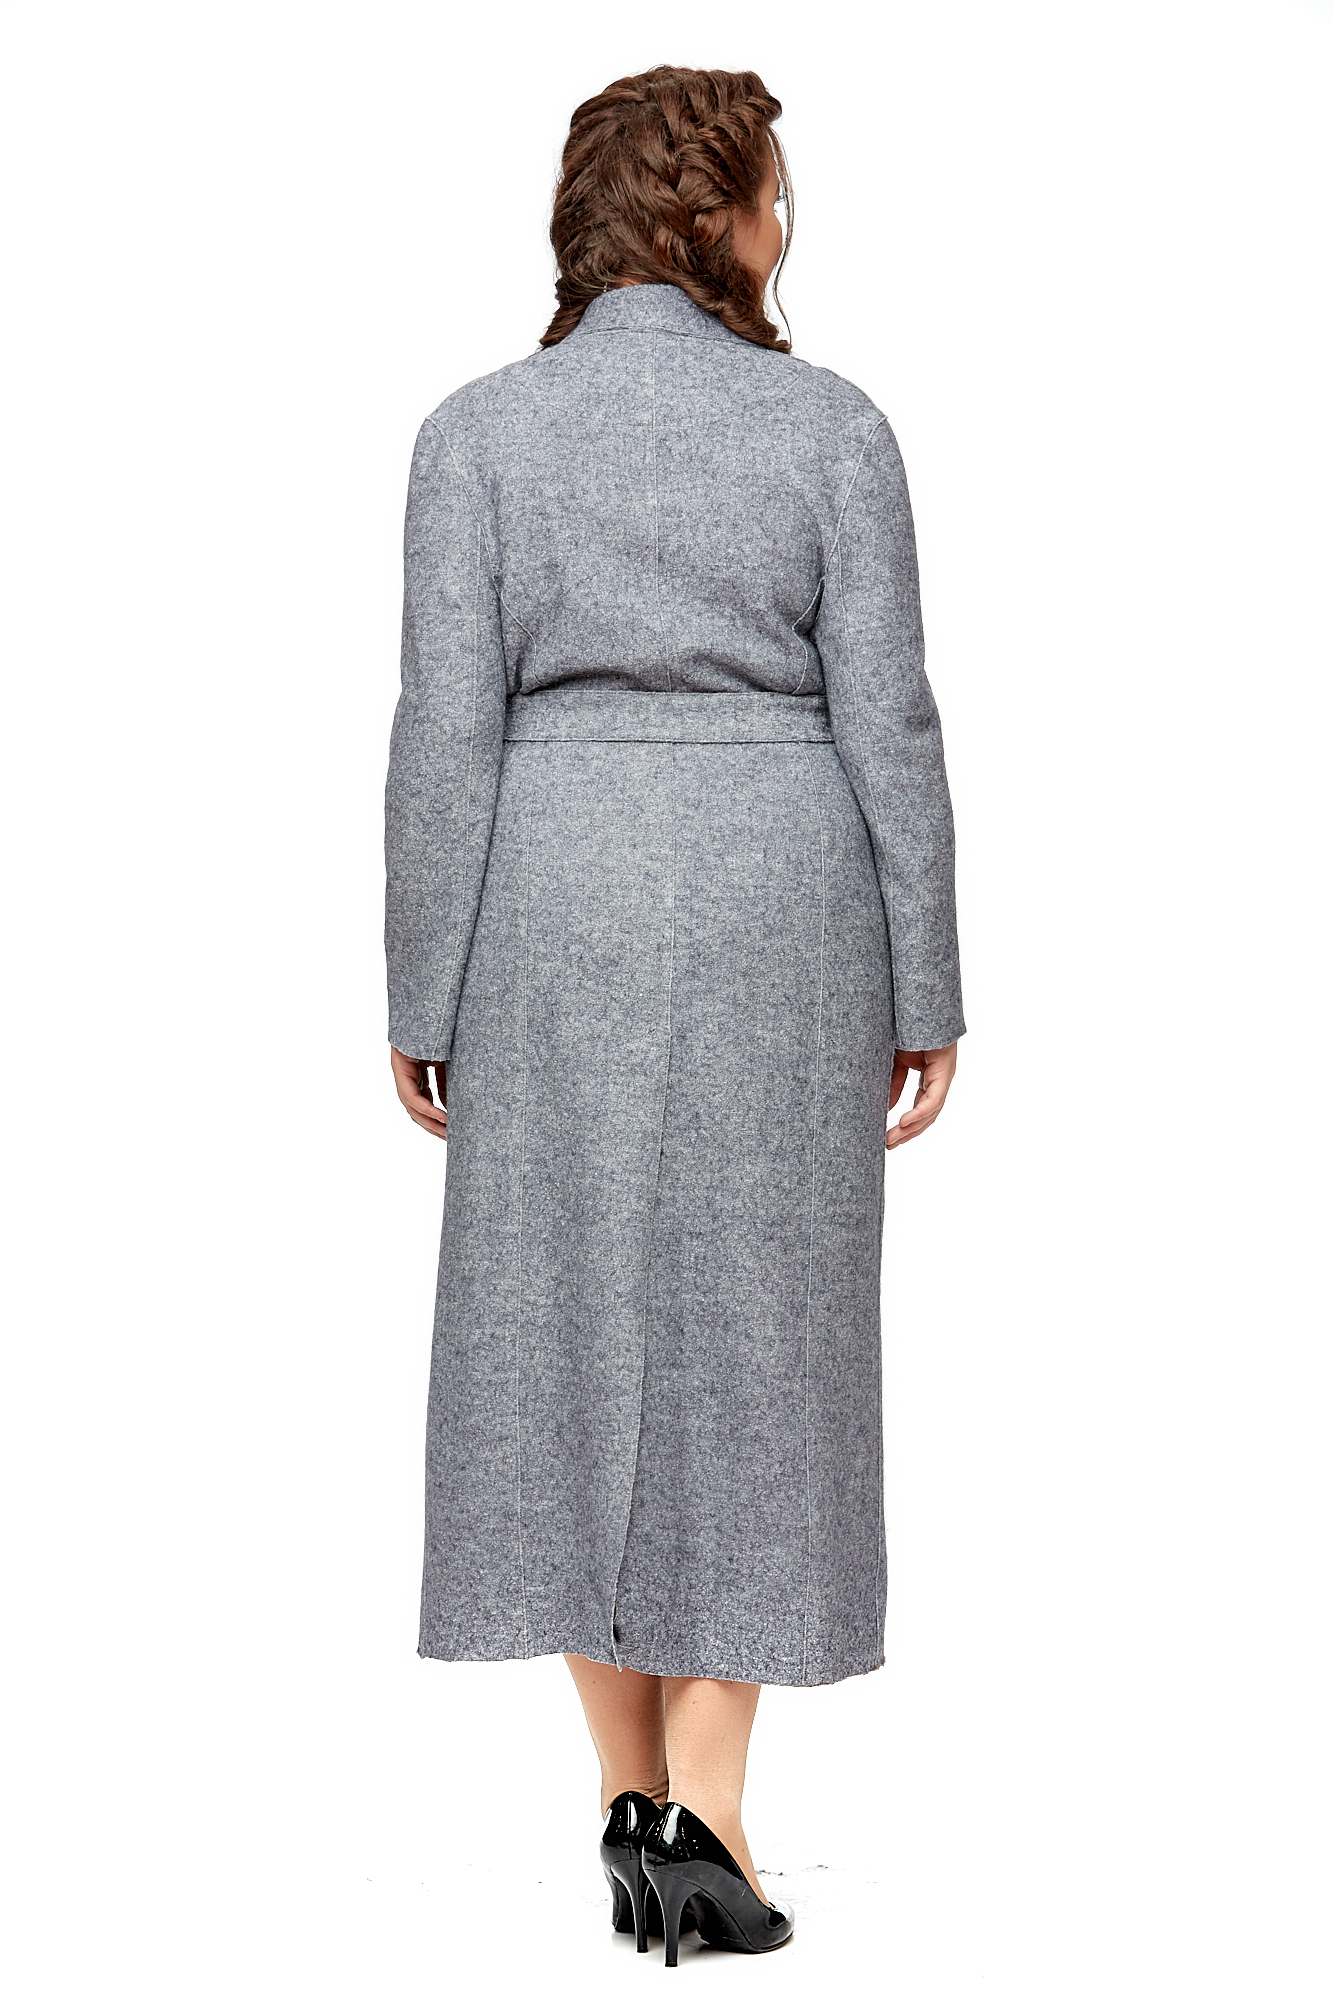 Женское пальто из текстиля с воротником 8002096-3